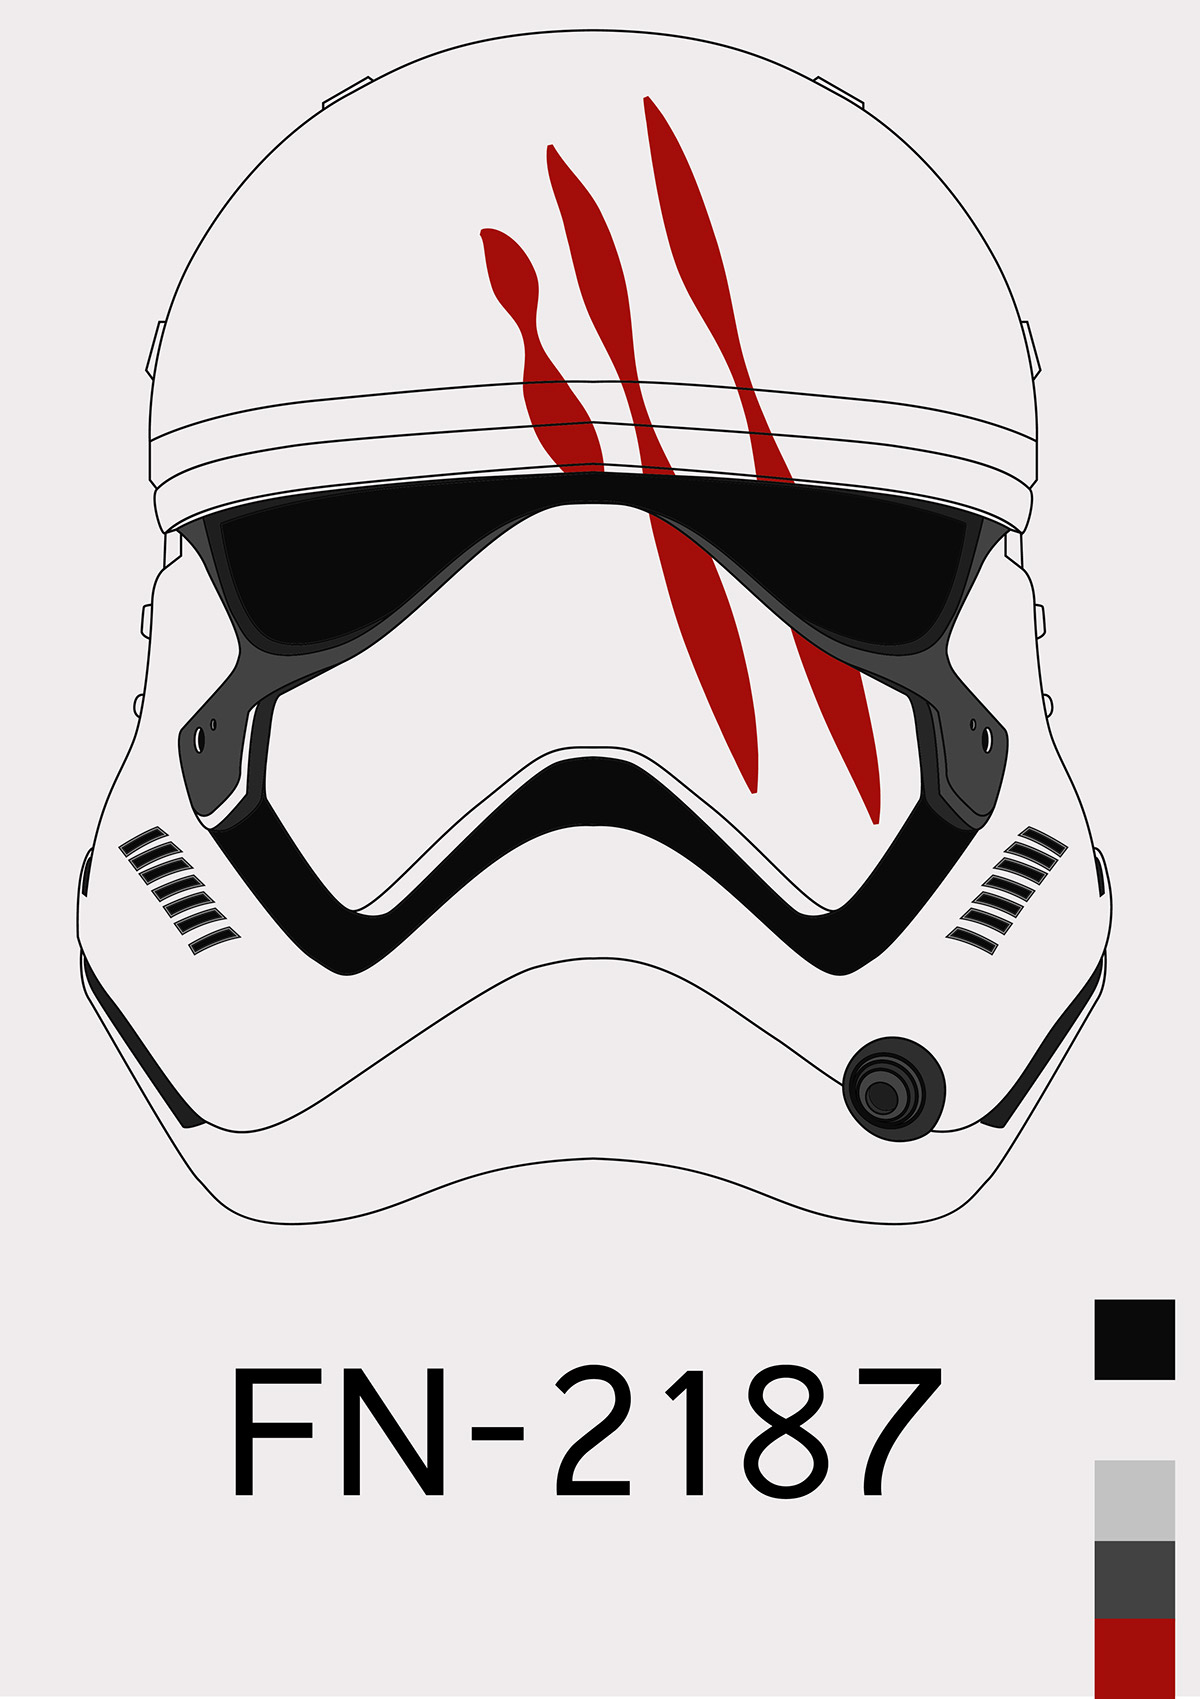 star wars The Force Awaken Finn stromtrooper